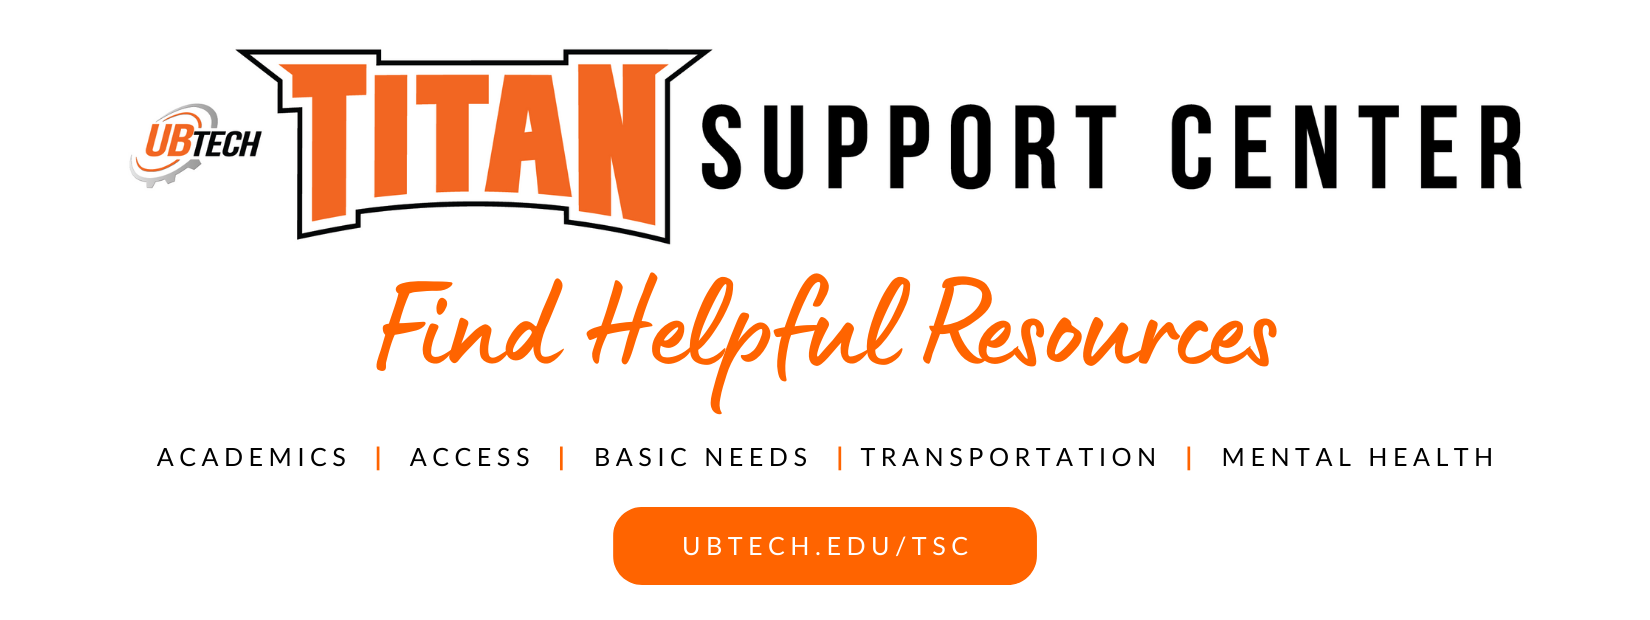 UBTech Titan Support Center. Find helpful resources. Academics. Success. Basic needs. Transportation. Mental Health. ubtech.edu/tsc